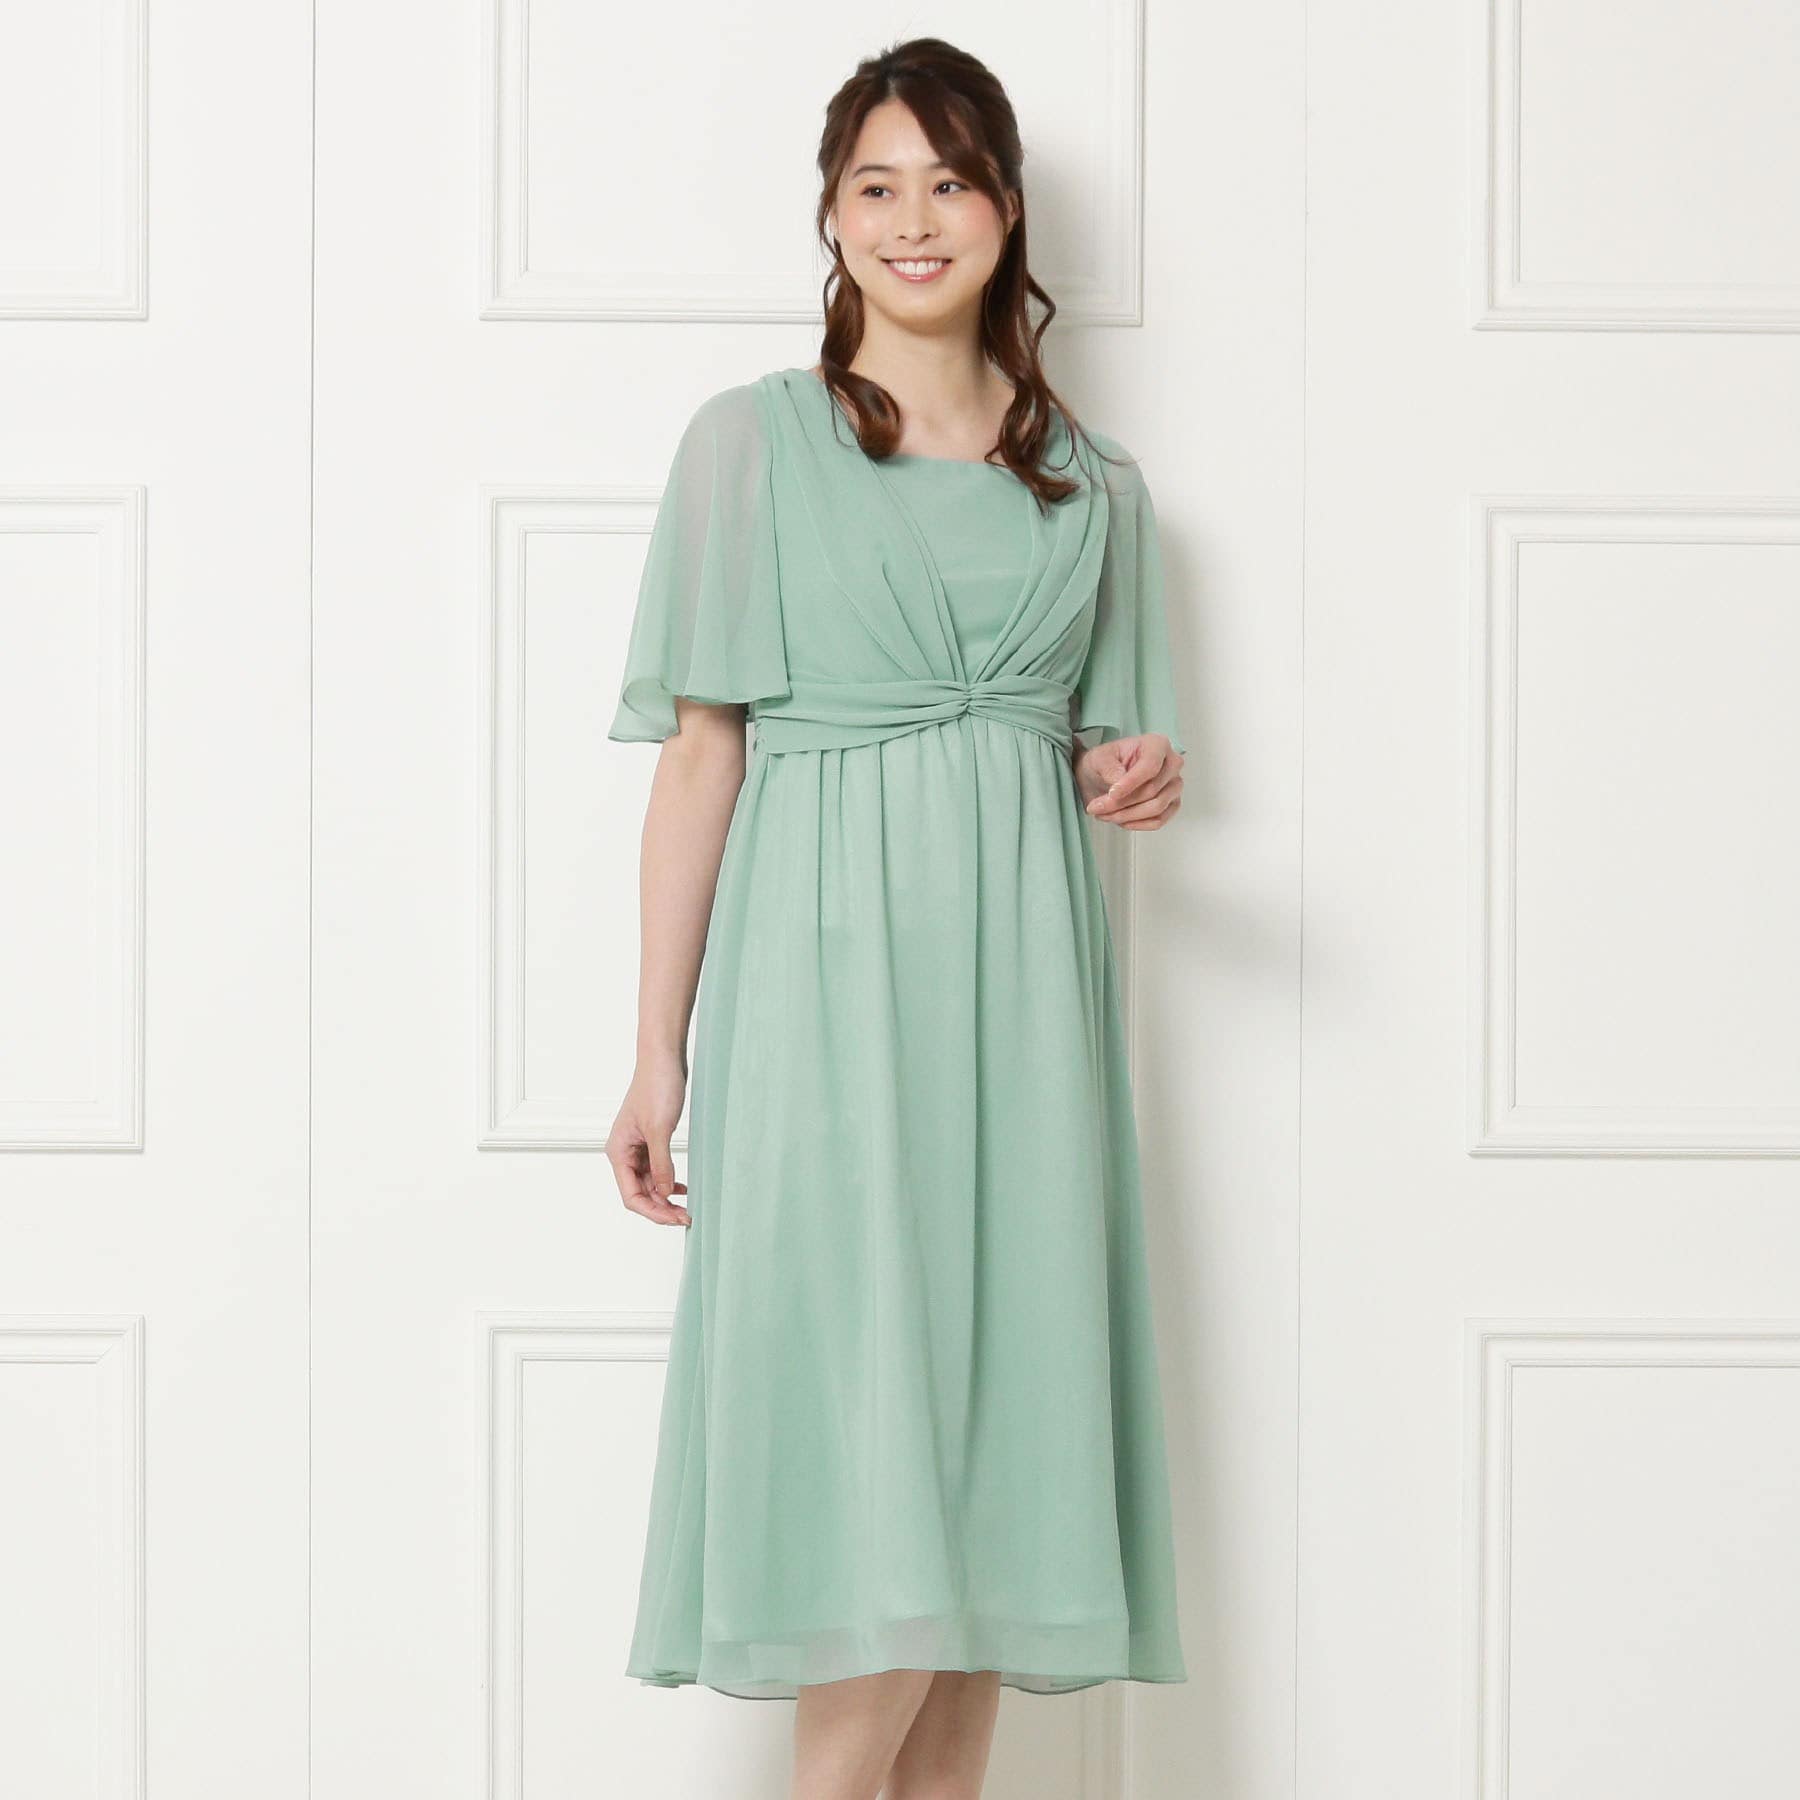 トウキョウソワール(東京ソワール)のEMOTIONALL DRESSES セミロングワンピース グリーン(022)